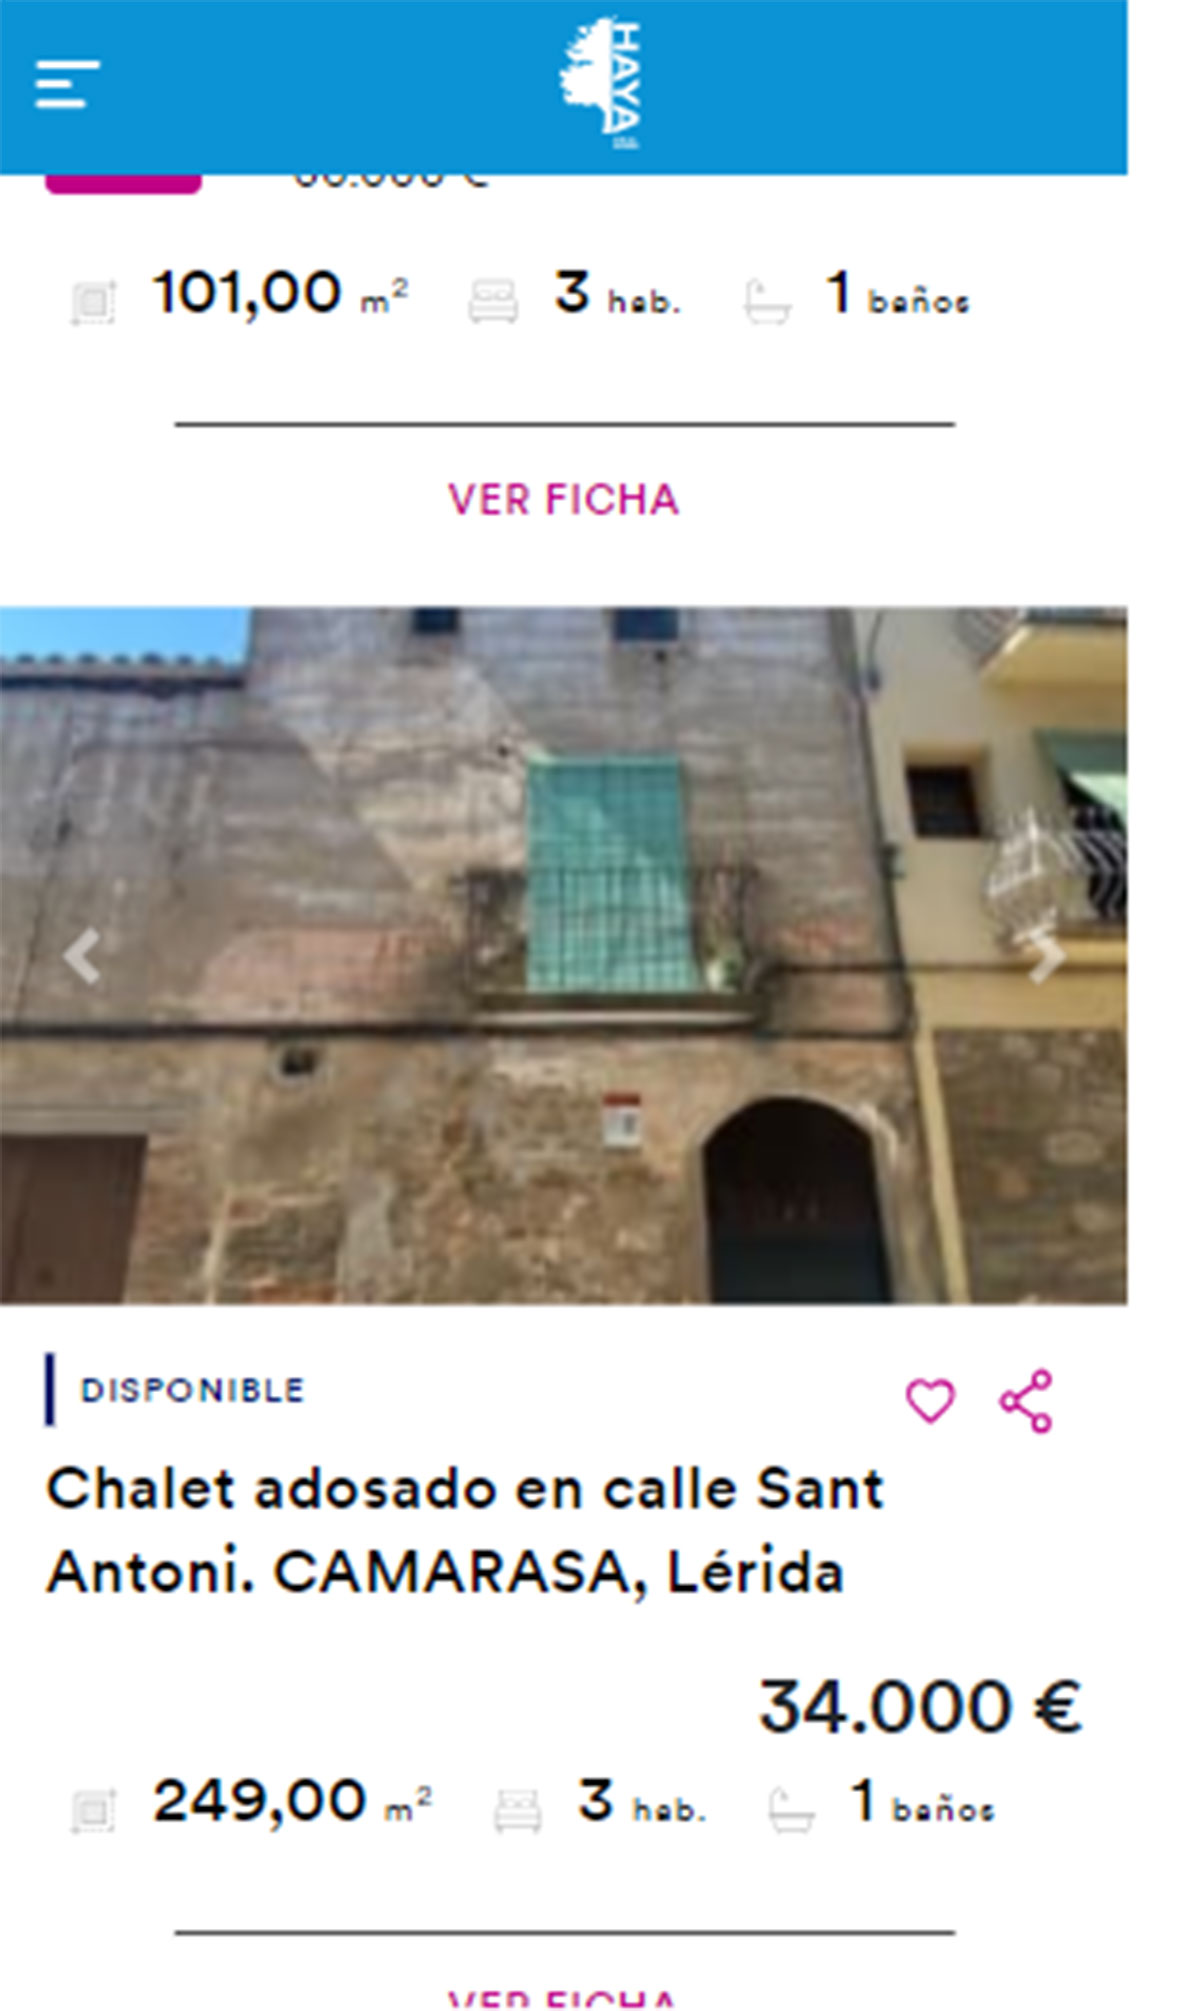 Chalet adosado en venta por 34.000 euros